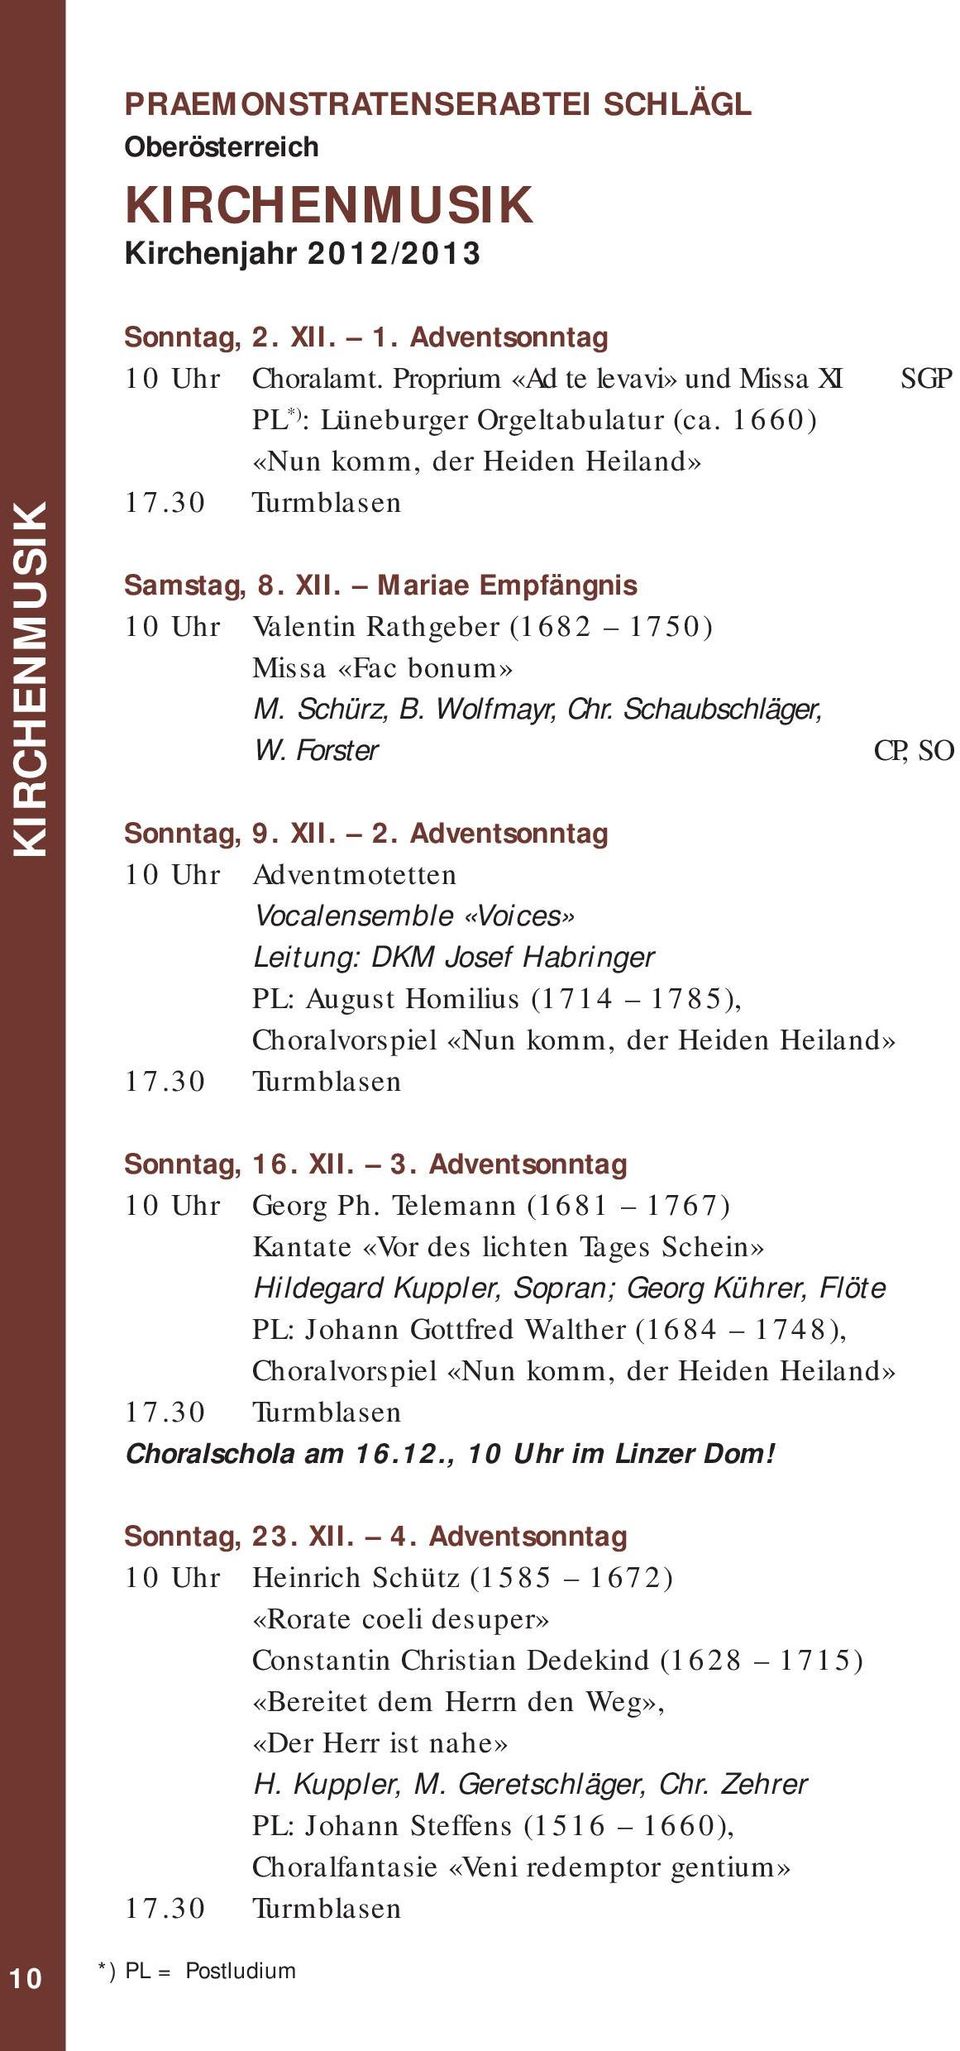 Mariae Empfängnis 10 Uhr Valentin Rathgeber (1682 1750) Missa «Fac bonum» M. Schürz, B. Wolfmayr, Chr. Schaubschläger, W. Forster CP, SO Sonntag, 9. XII. 2.